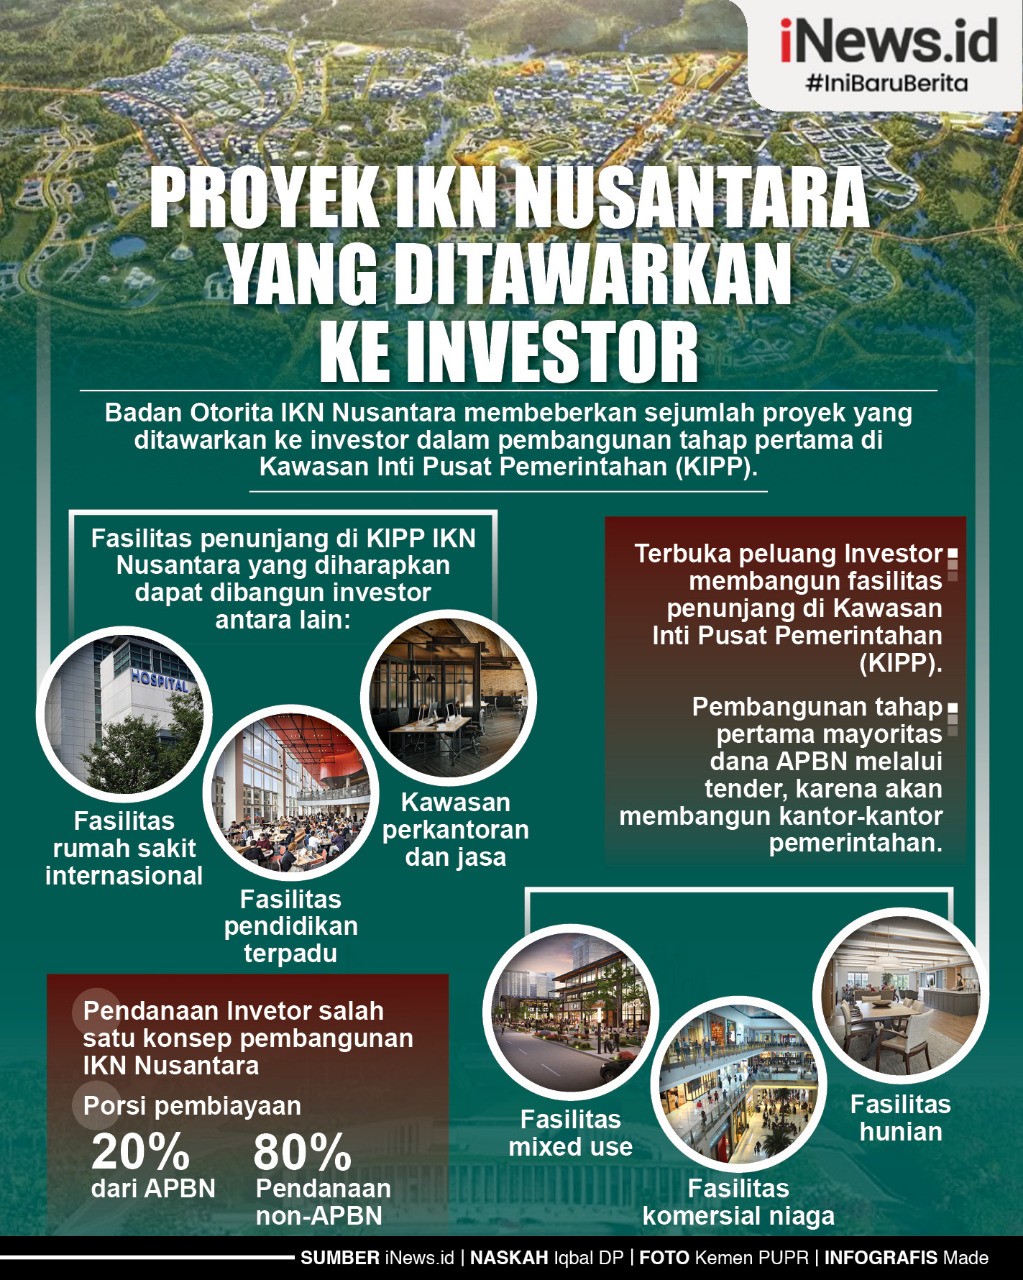 Infografis Proyek IKN Nusantara yang Ditawarkan ke Investor. (Desain: Made)